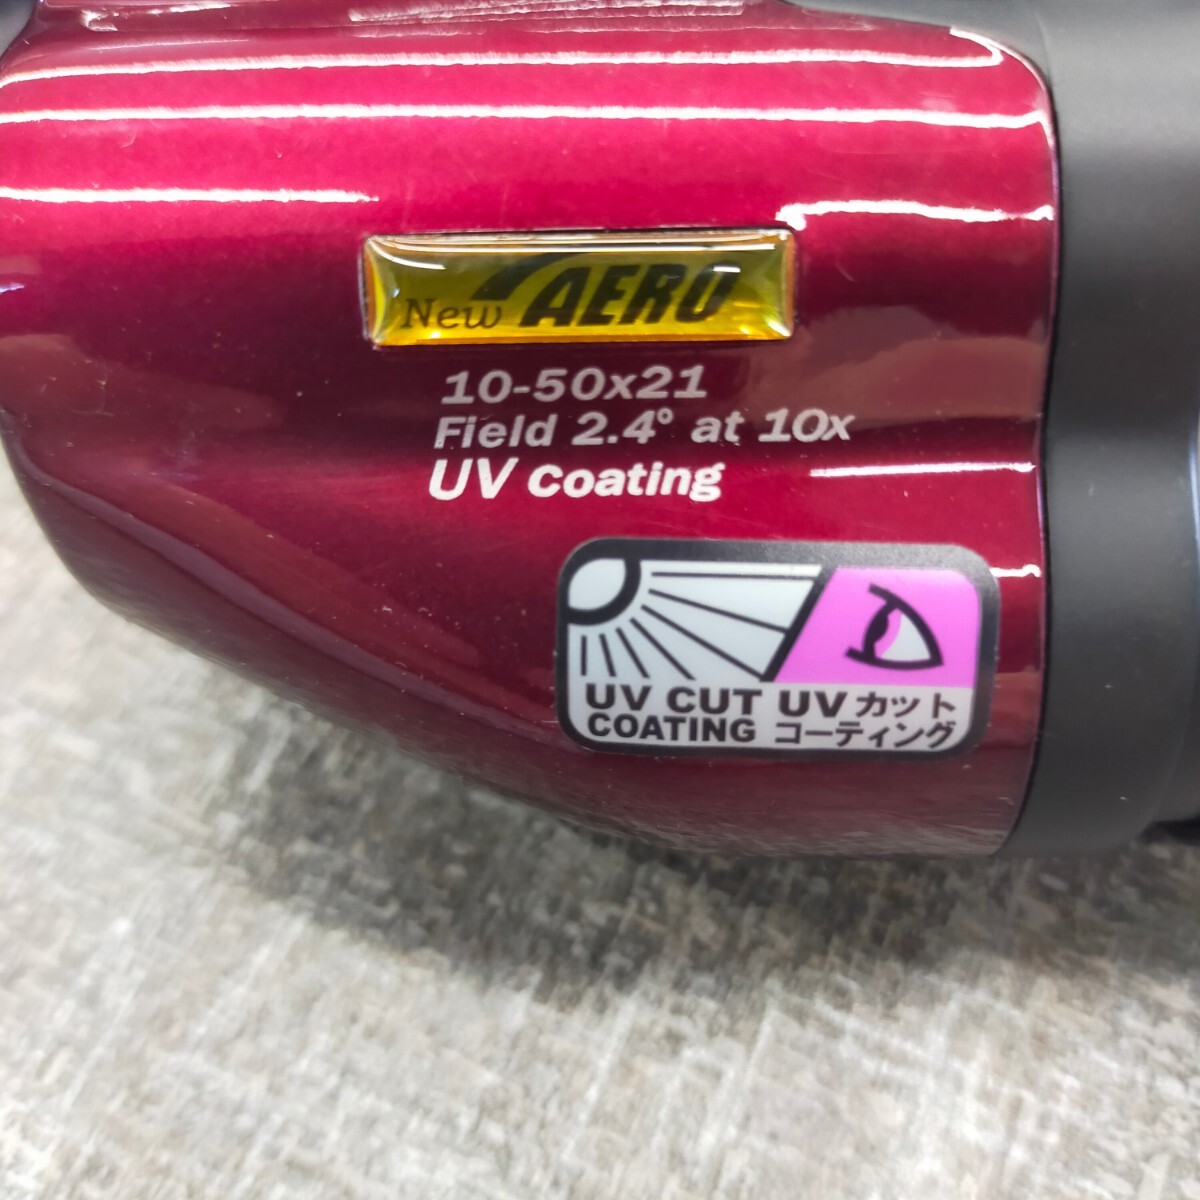 su1234 binoculars Kenko New AERO 10-50×21 UV coating wine red UV cut Kenko new aero soft case attaching 